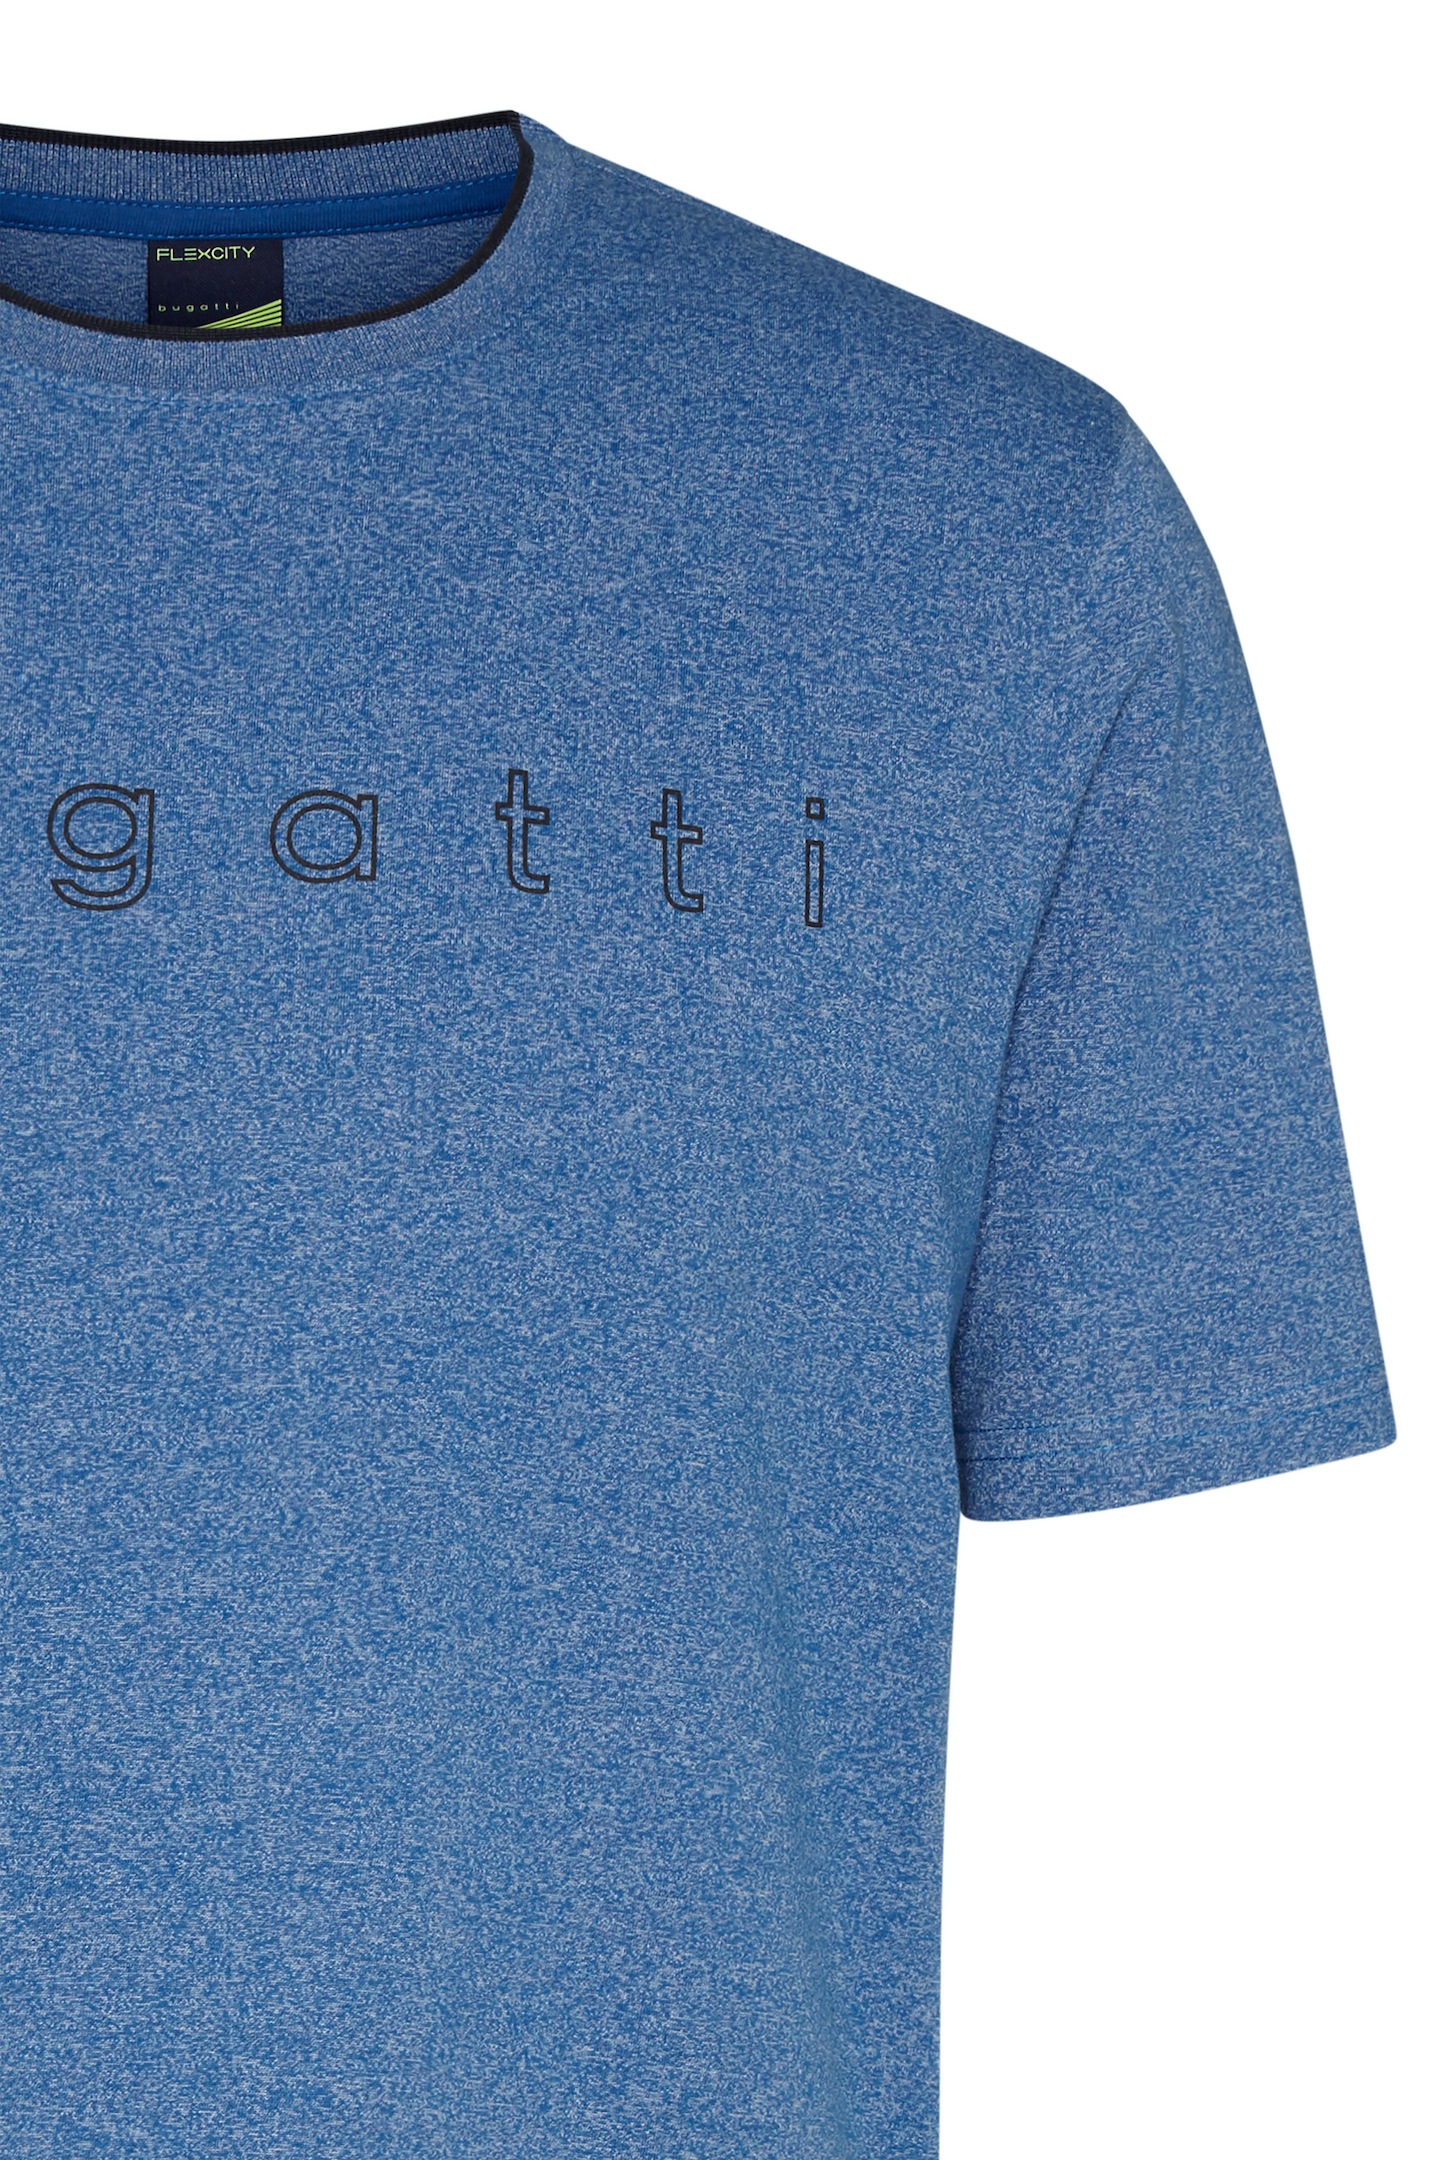 bugatti T-Shirt, mit großem kaufen online bugatti Logo-Print